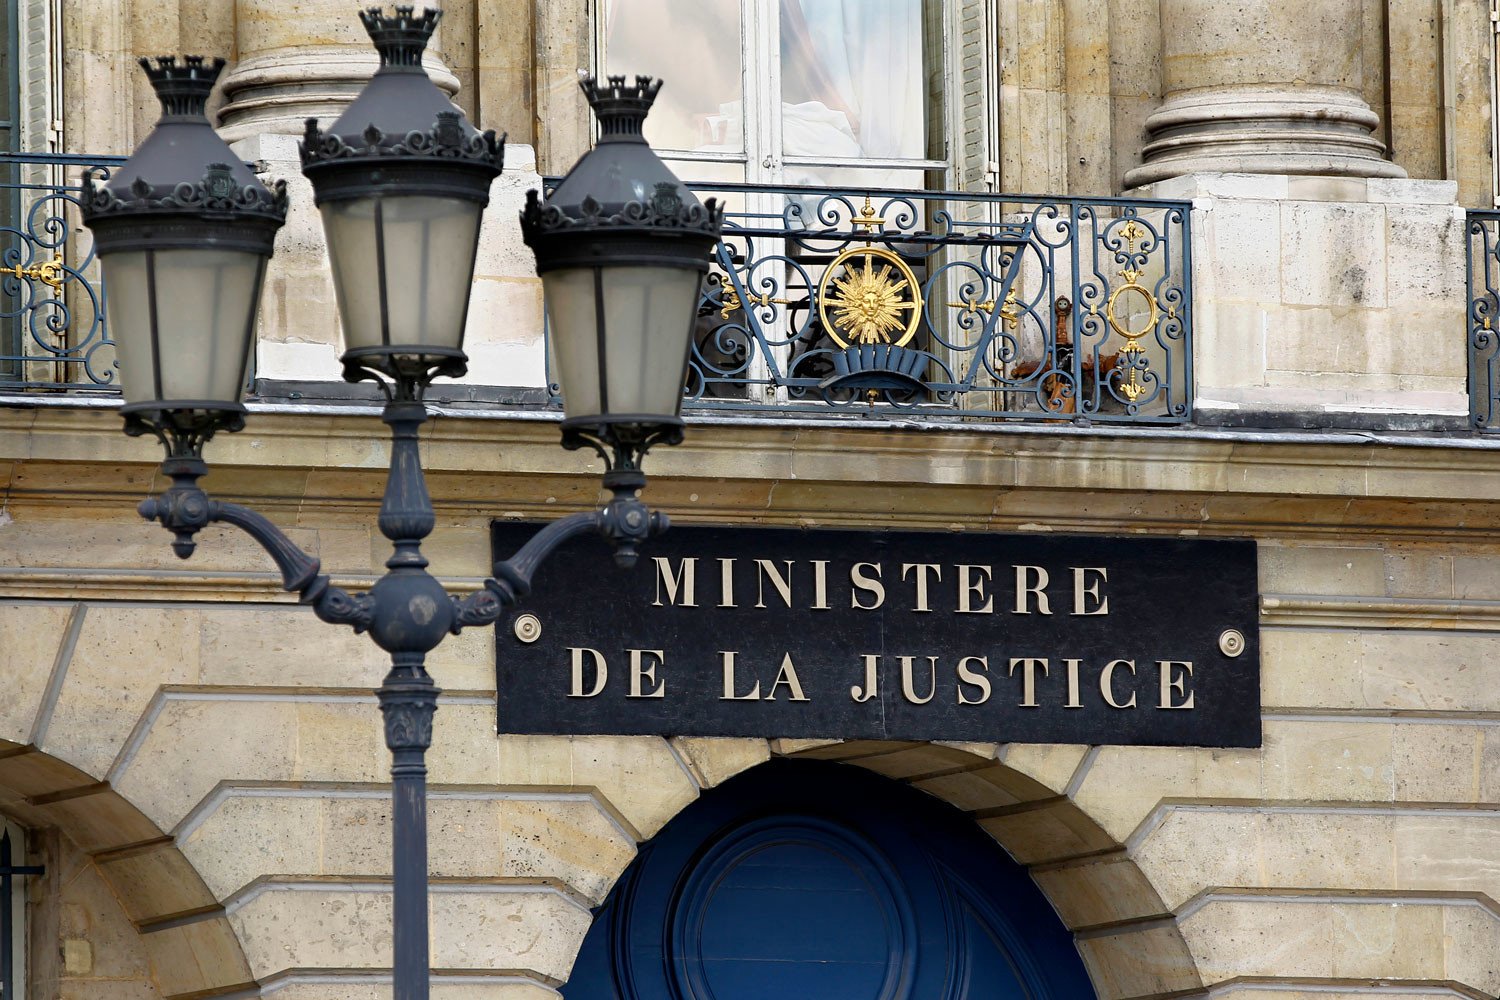 Ֆրանսիայի արդարադատության նախարարը 180 հազար եվրո հարկ չի վճարել